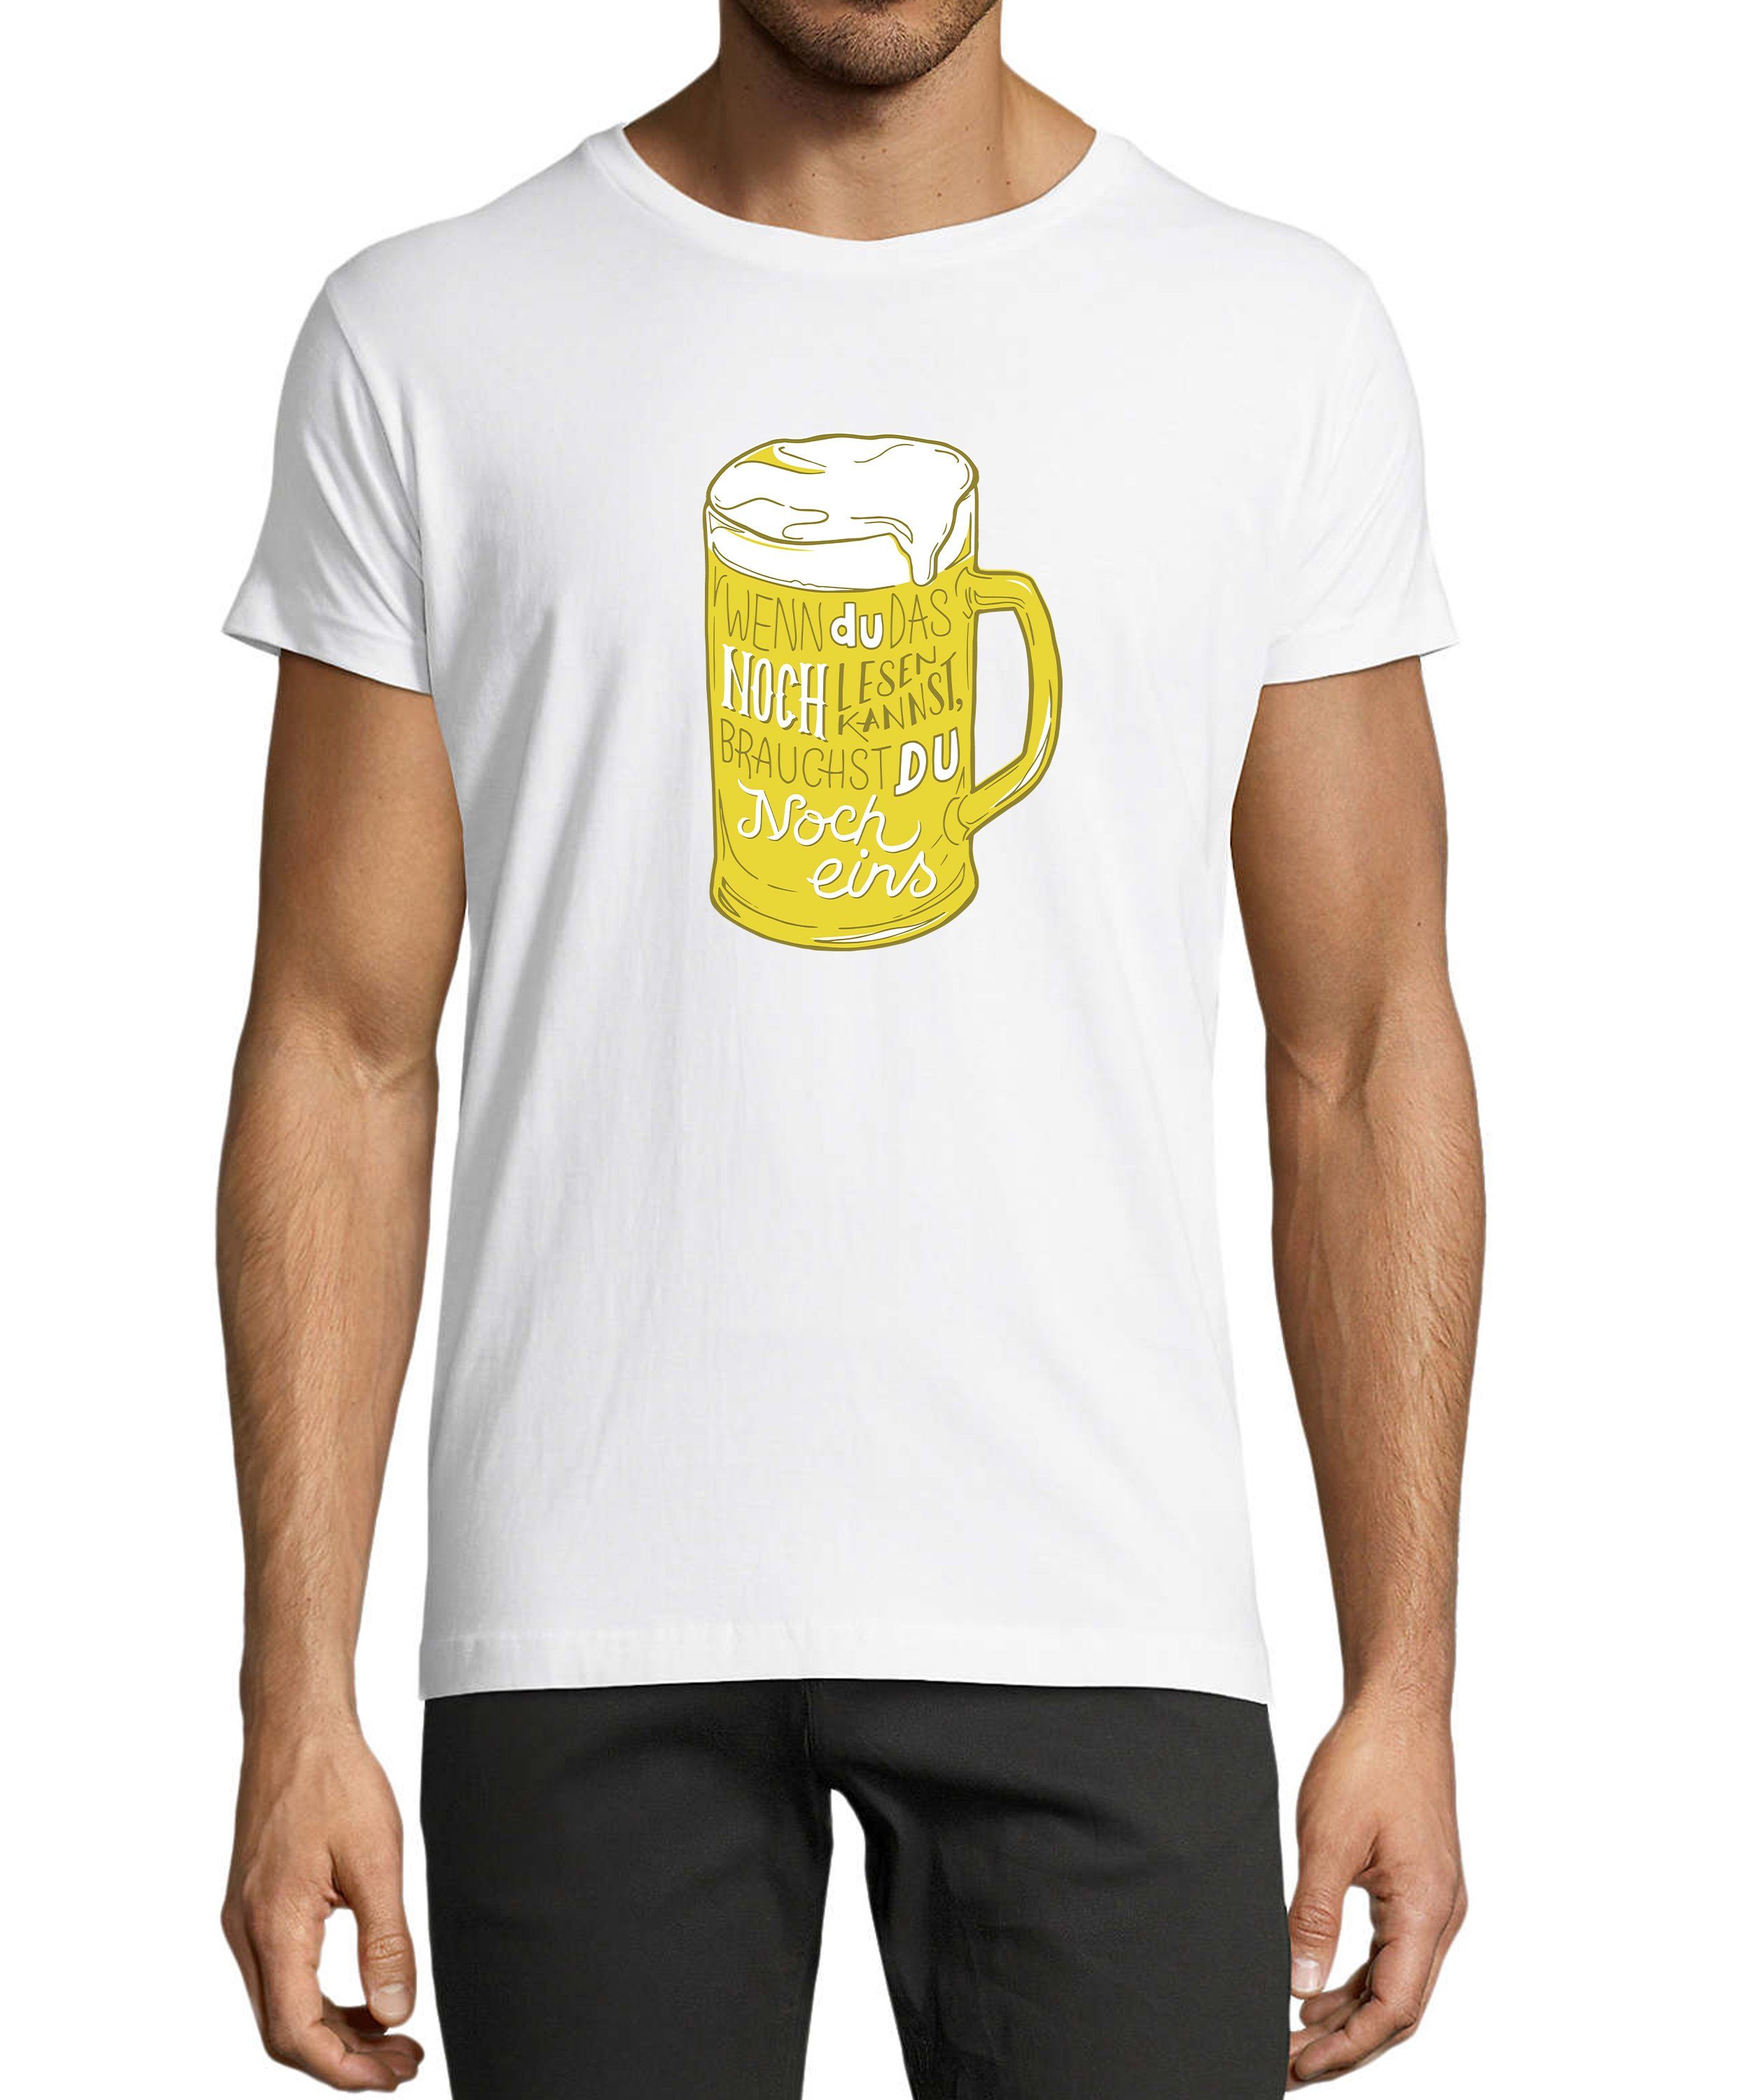 MyDesign24 T-Shirt Herren Fun Print Shirt - Oktoberfest Trinkshirt mit witzigem Spruch Baumwollshirt mit Aufdruck Regular Fit, i310 weiss